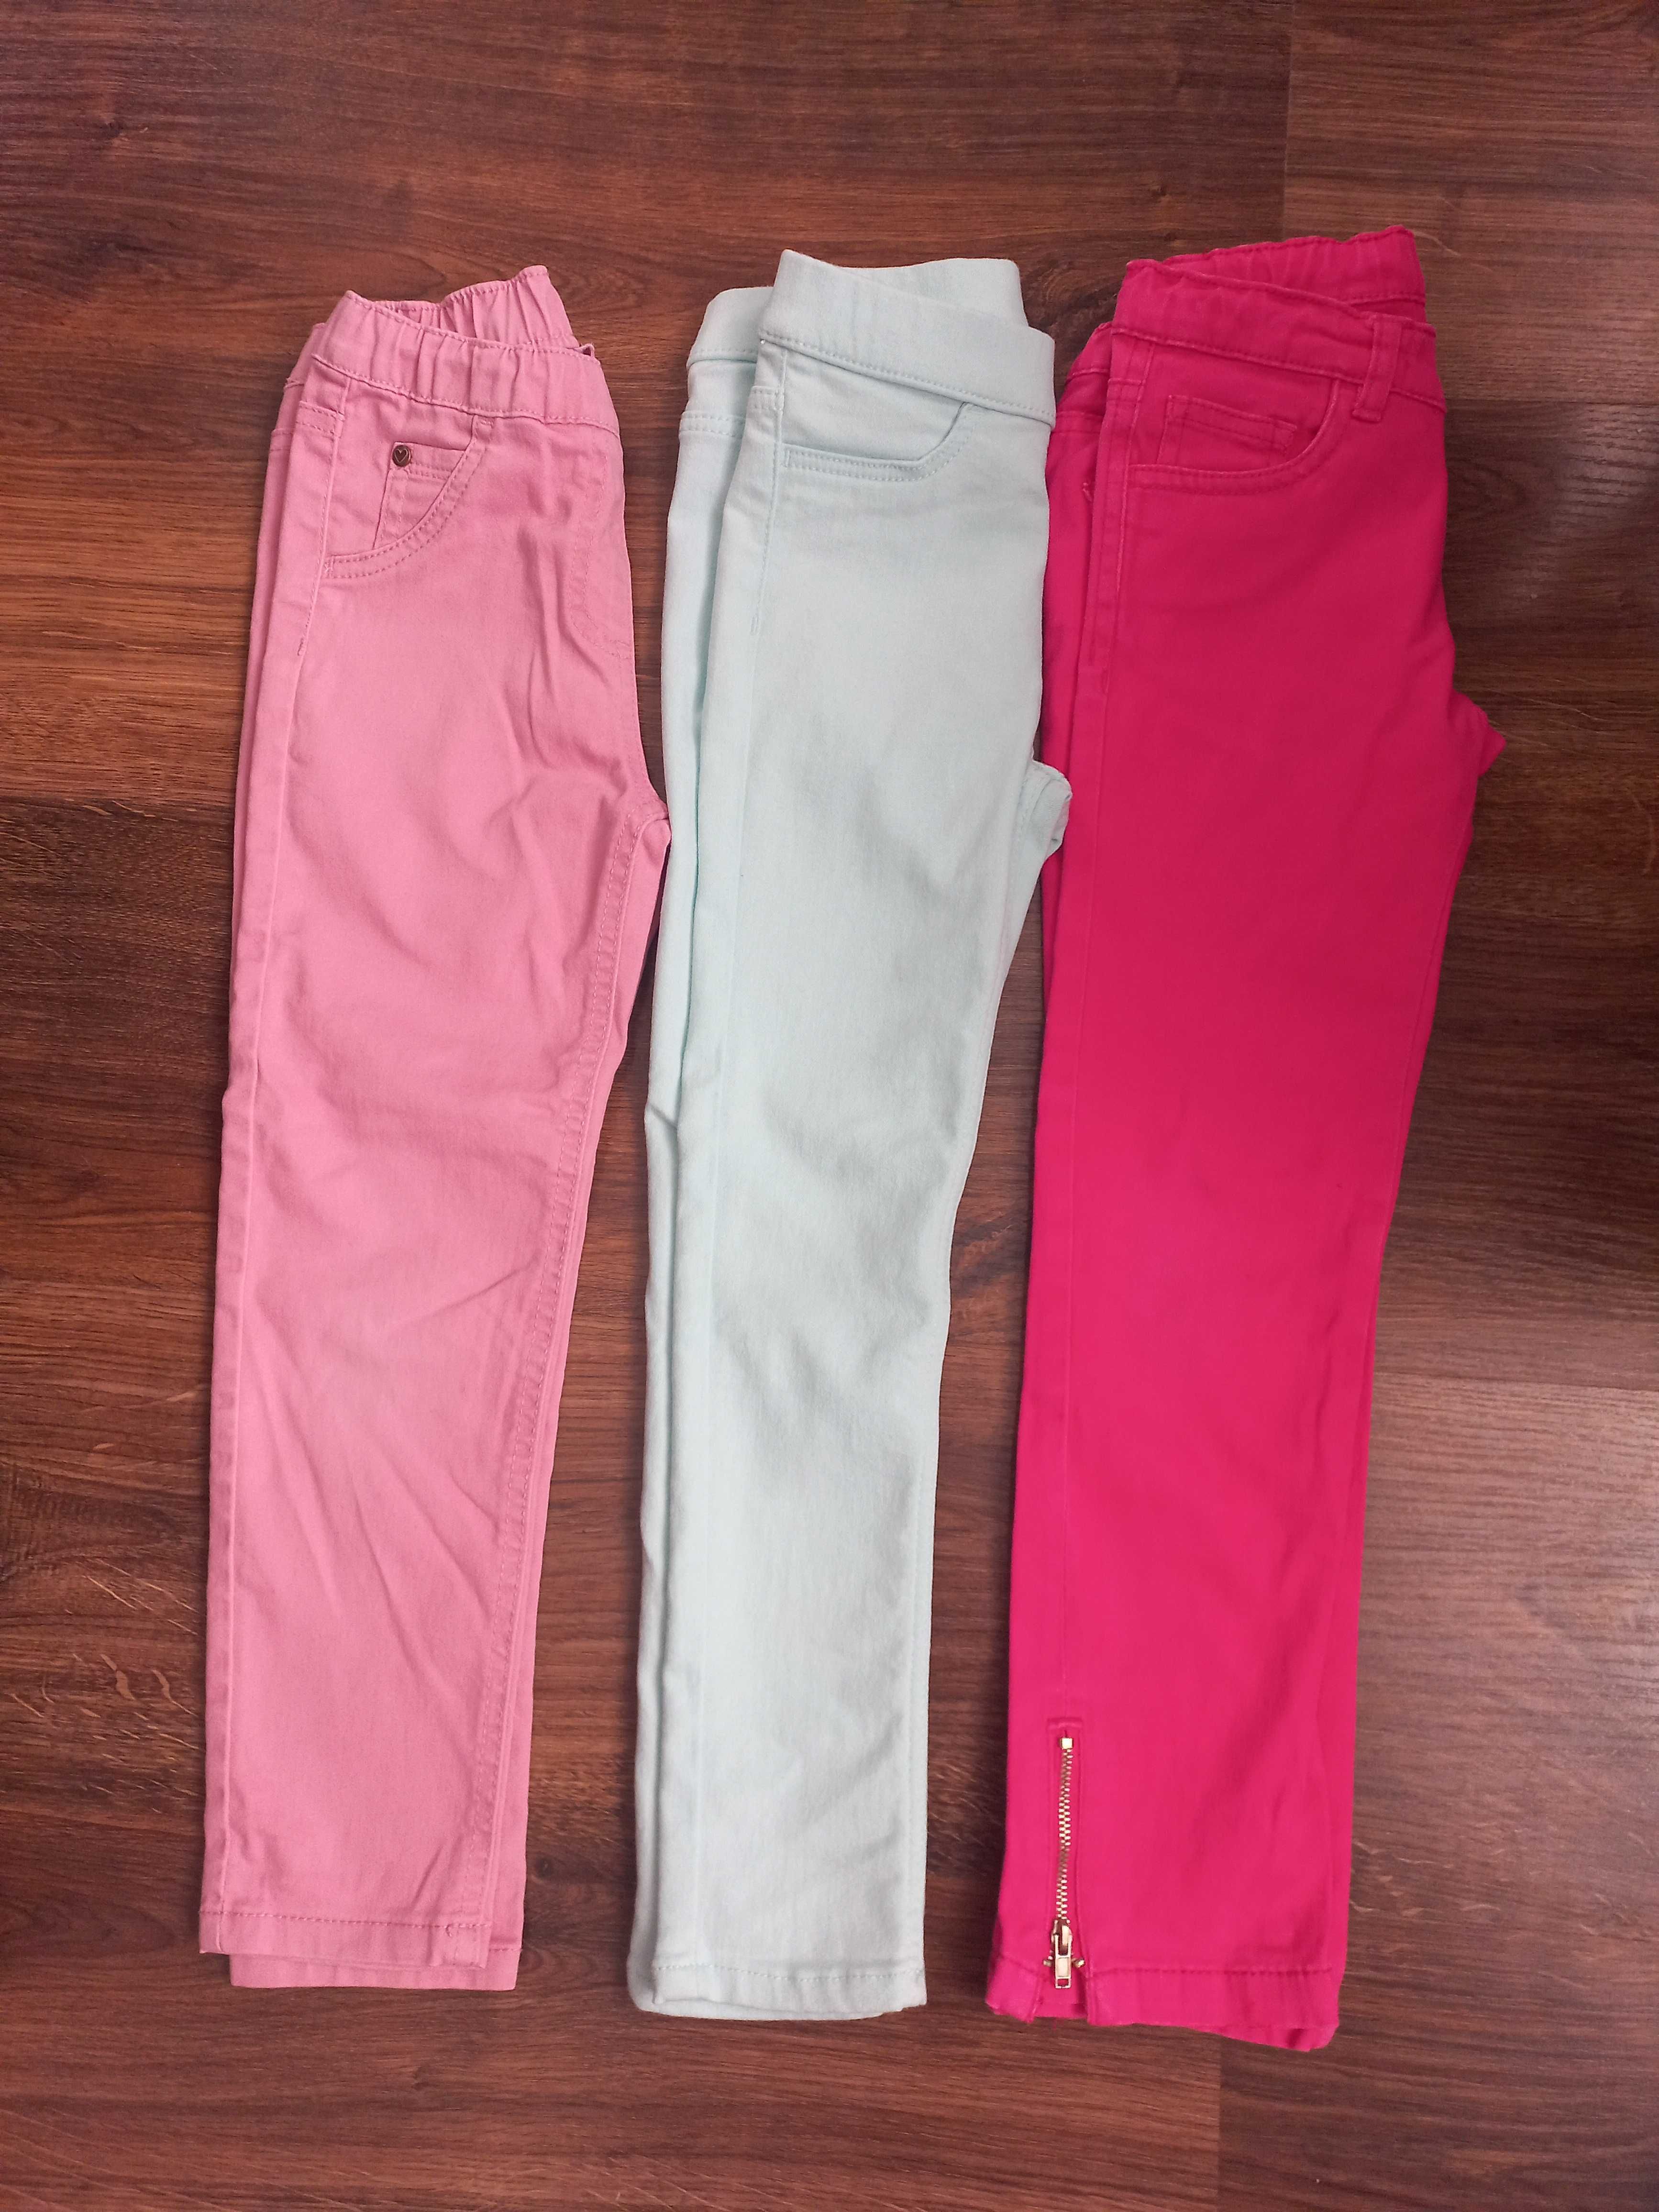 Spodnie legginsy jeans dziewczęce, 116, komplet w super cenie!